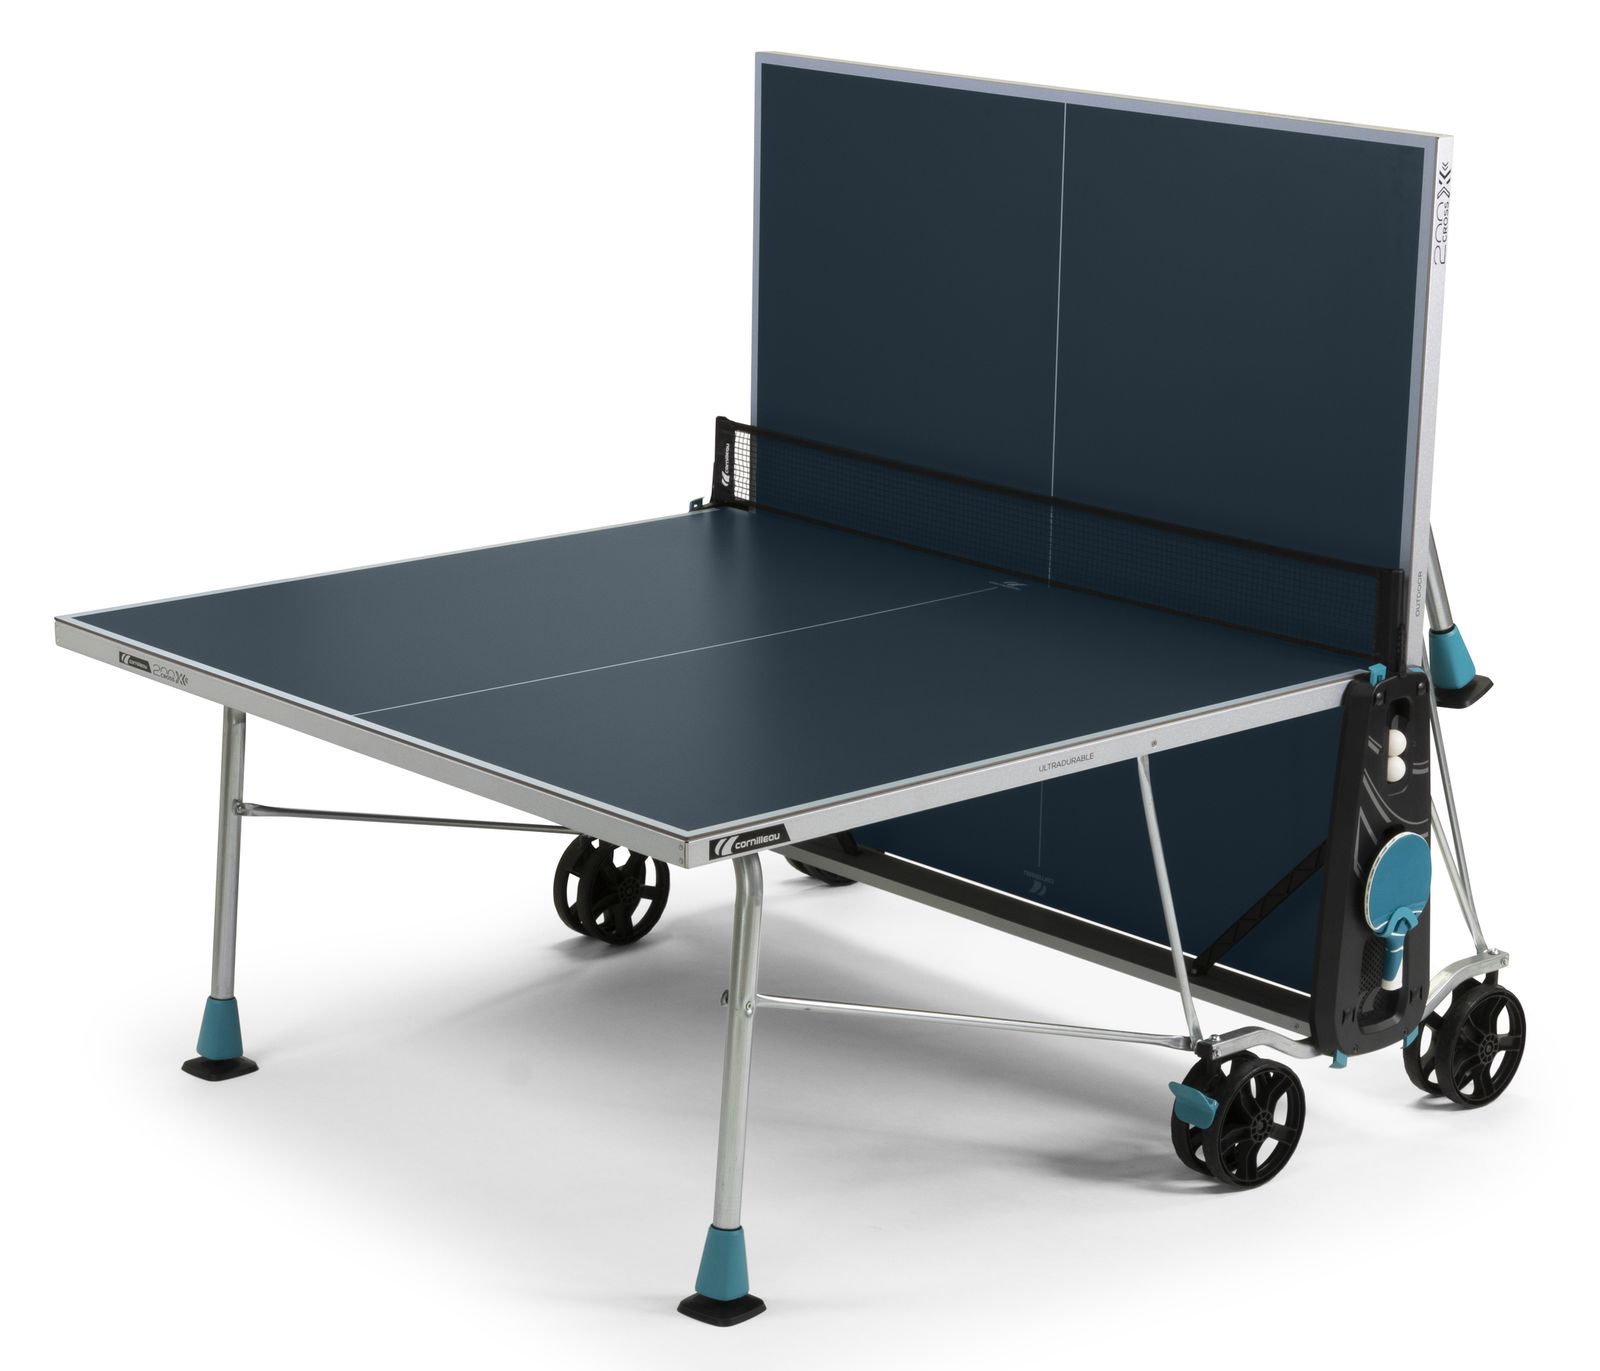 Теннисный стол Cornilleau всепогодный 200X Outdoor blue 5 mm фото №10